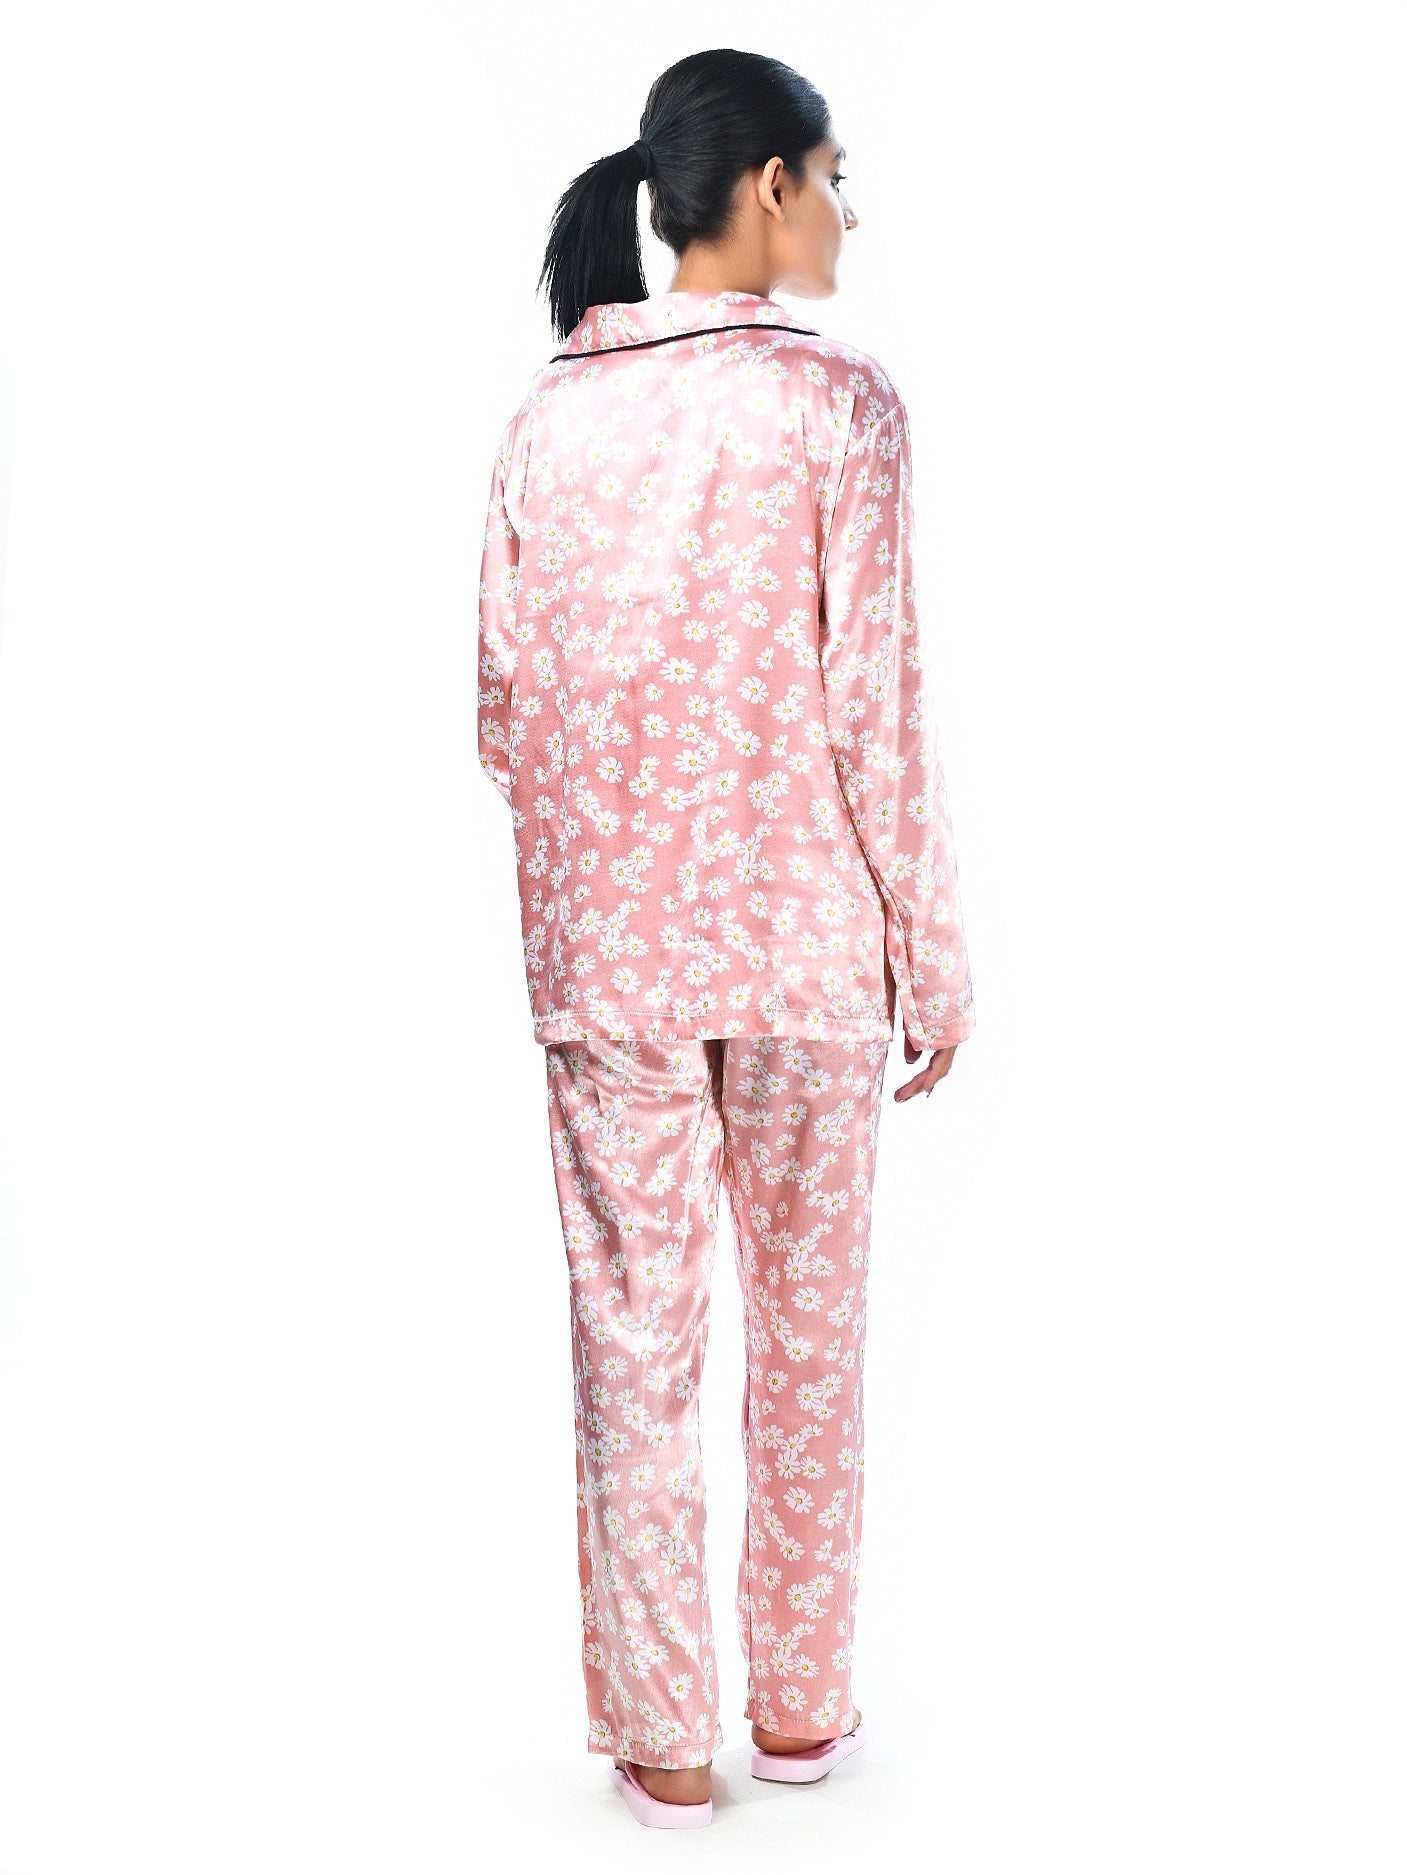 Silk Floral Printed Sleep Wear